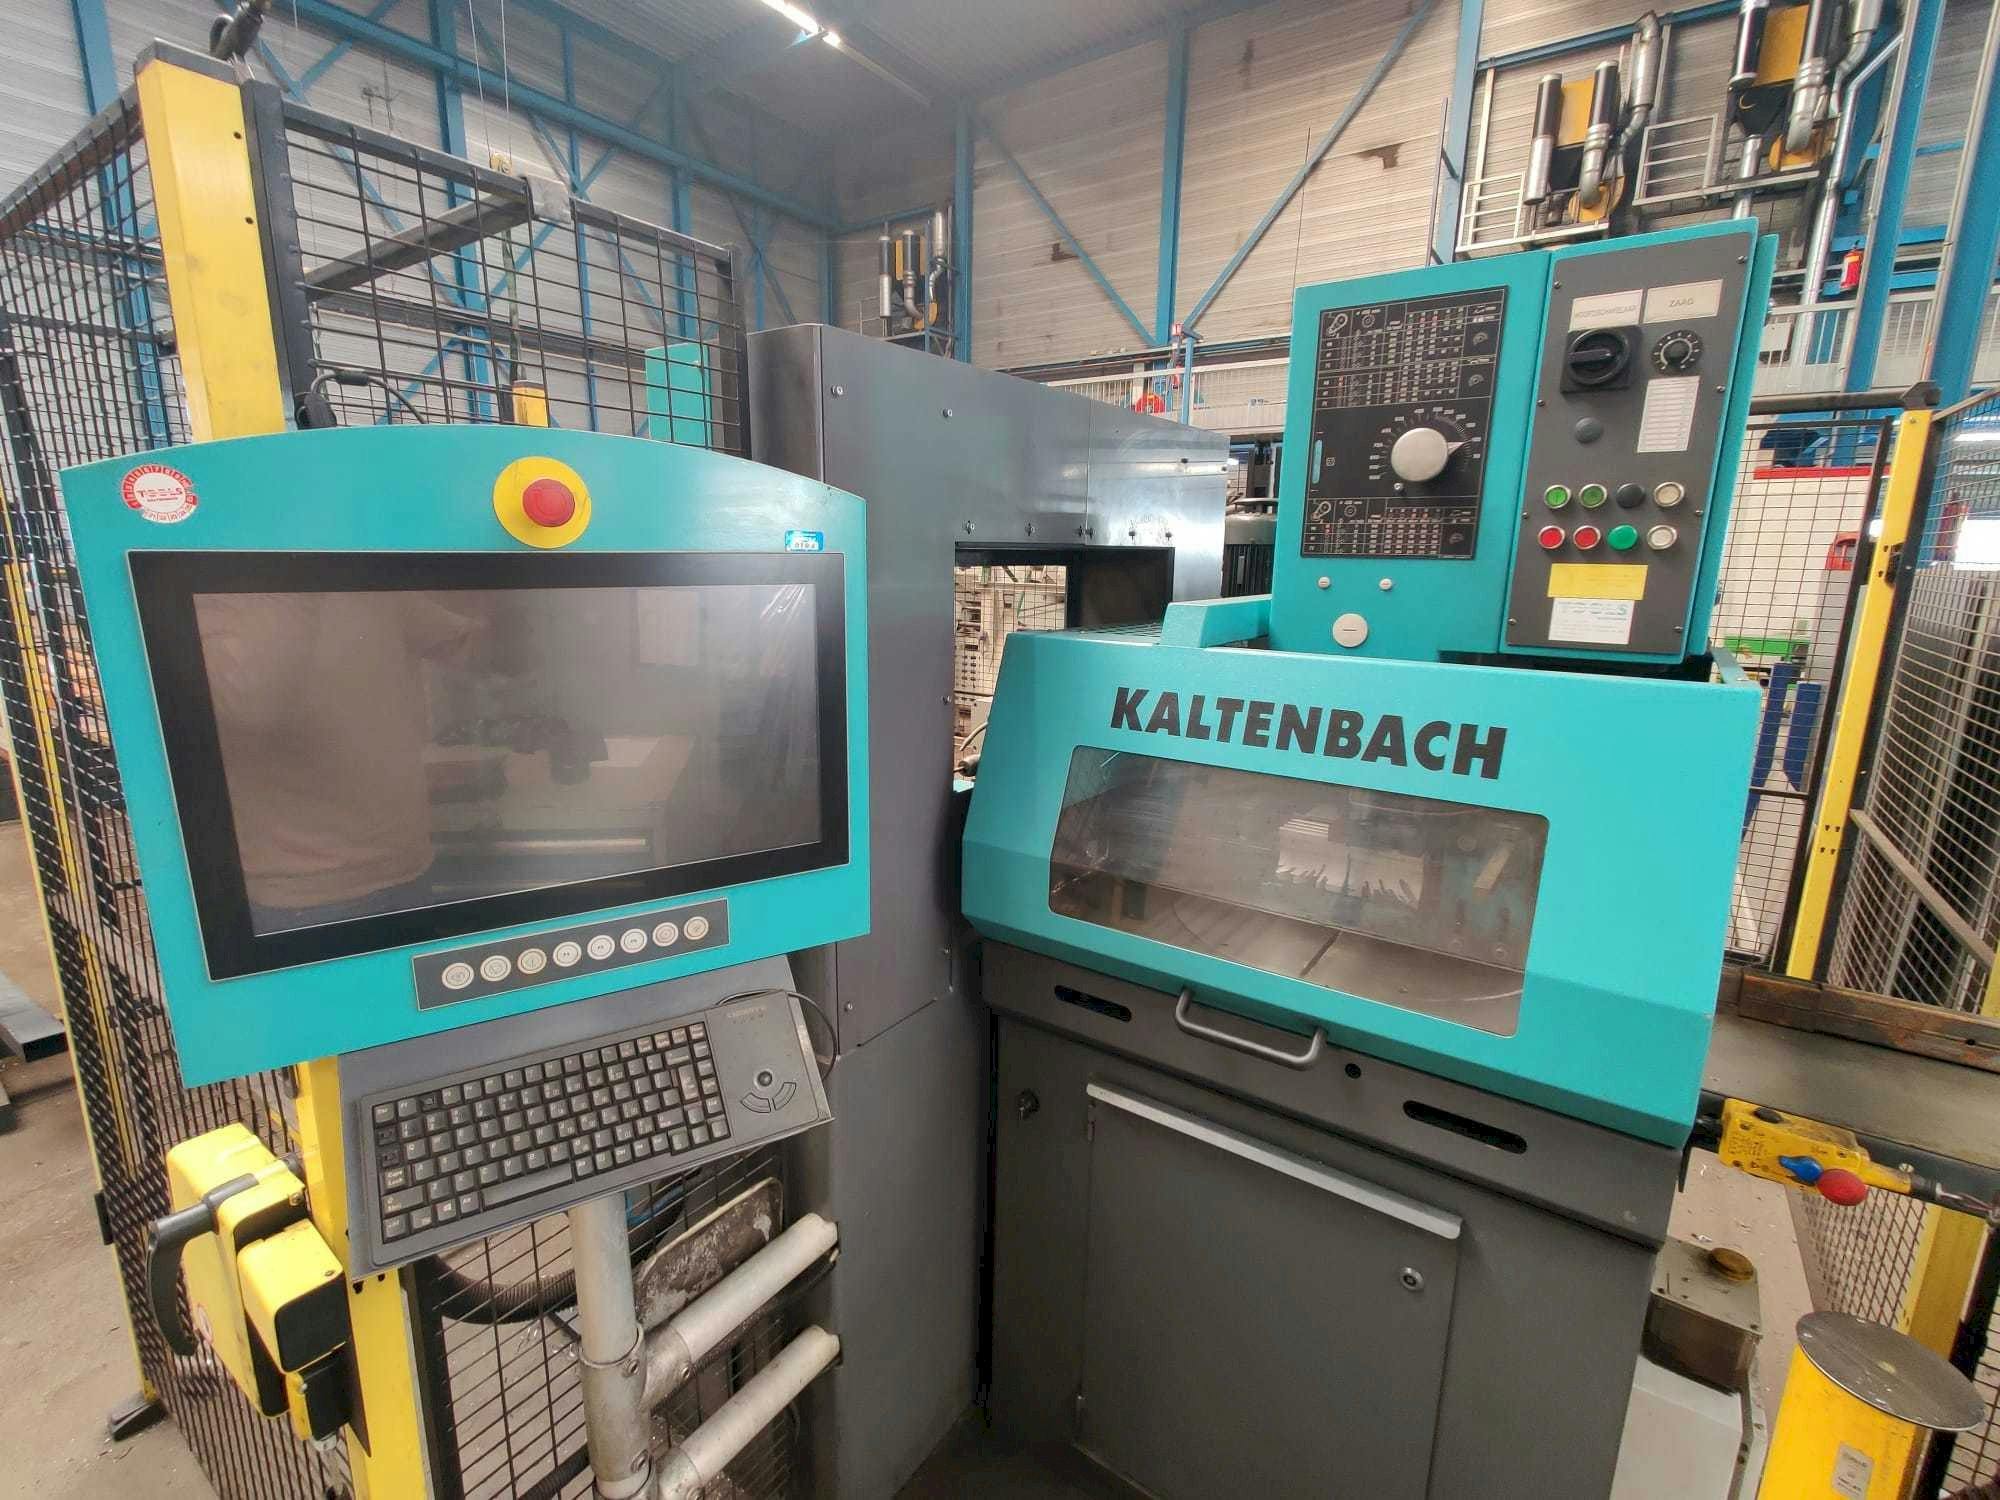 Widok z przodu maszyny KALTENBACH KKS 450 + KBT 142